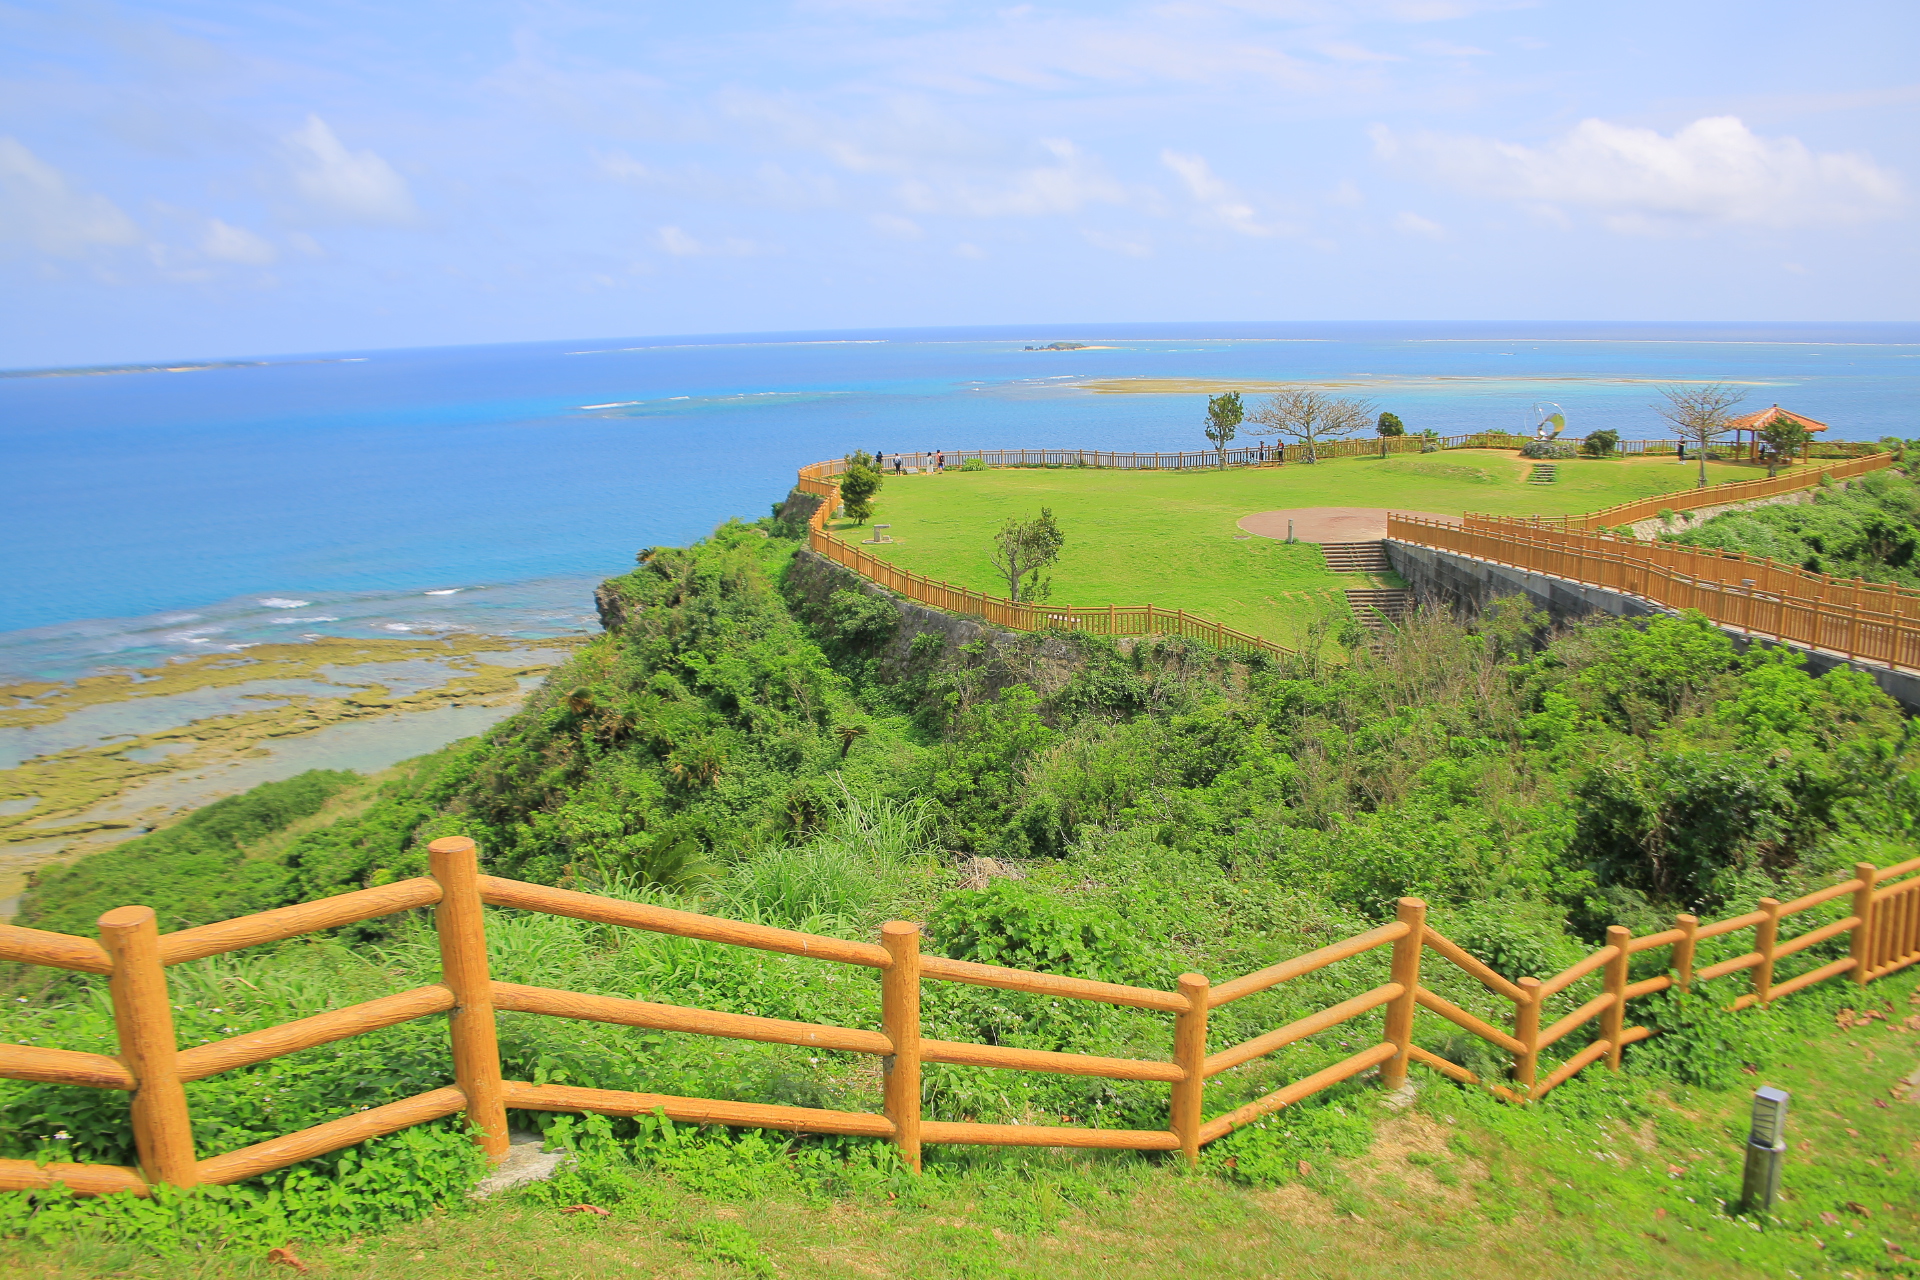 【沖繩自助旅行】沖繩自駕遊8天,景點美食住宿行程,玩遍北中南部 @小環妞 幸福足跡